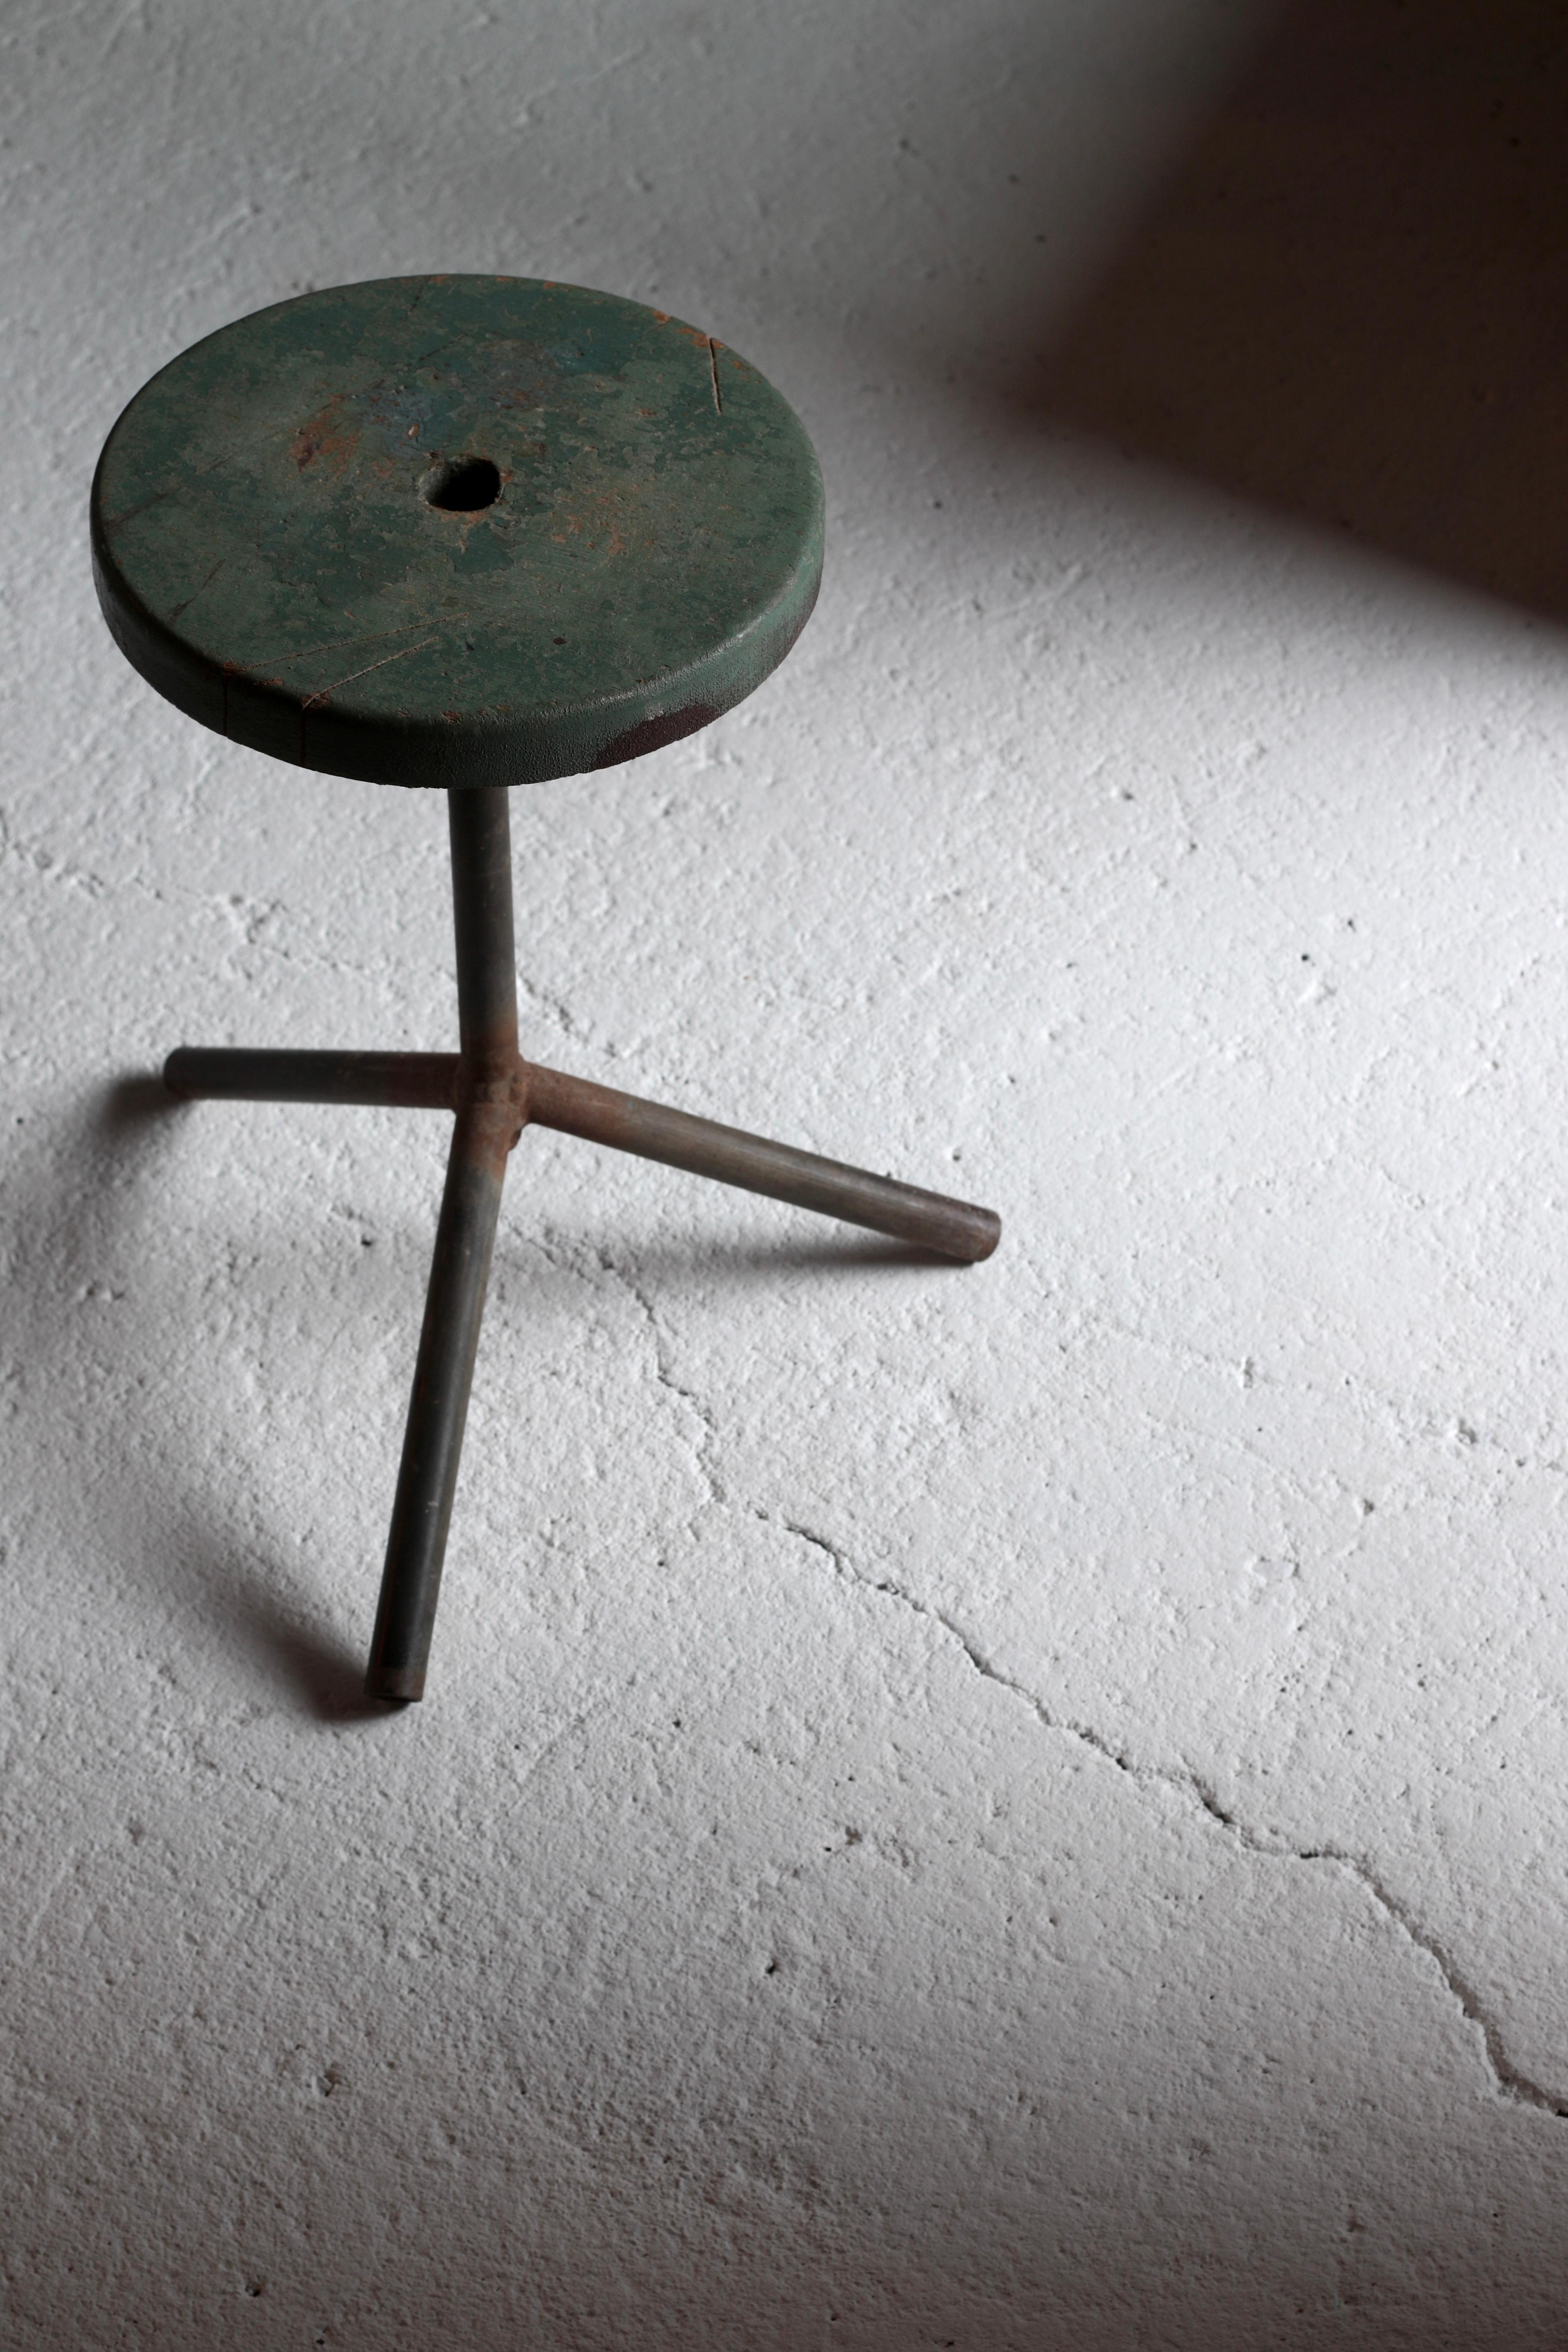 C'est une vieille chaise pivotante japonaise.

Il semble qu'il ait été utilisé en le faisant pivoter sur cette surface d'assise lors de la réalisation de bonsaïs.

Les pieds sont en fer et constituent un matériau simple.

La surface du siège semble